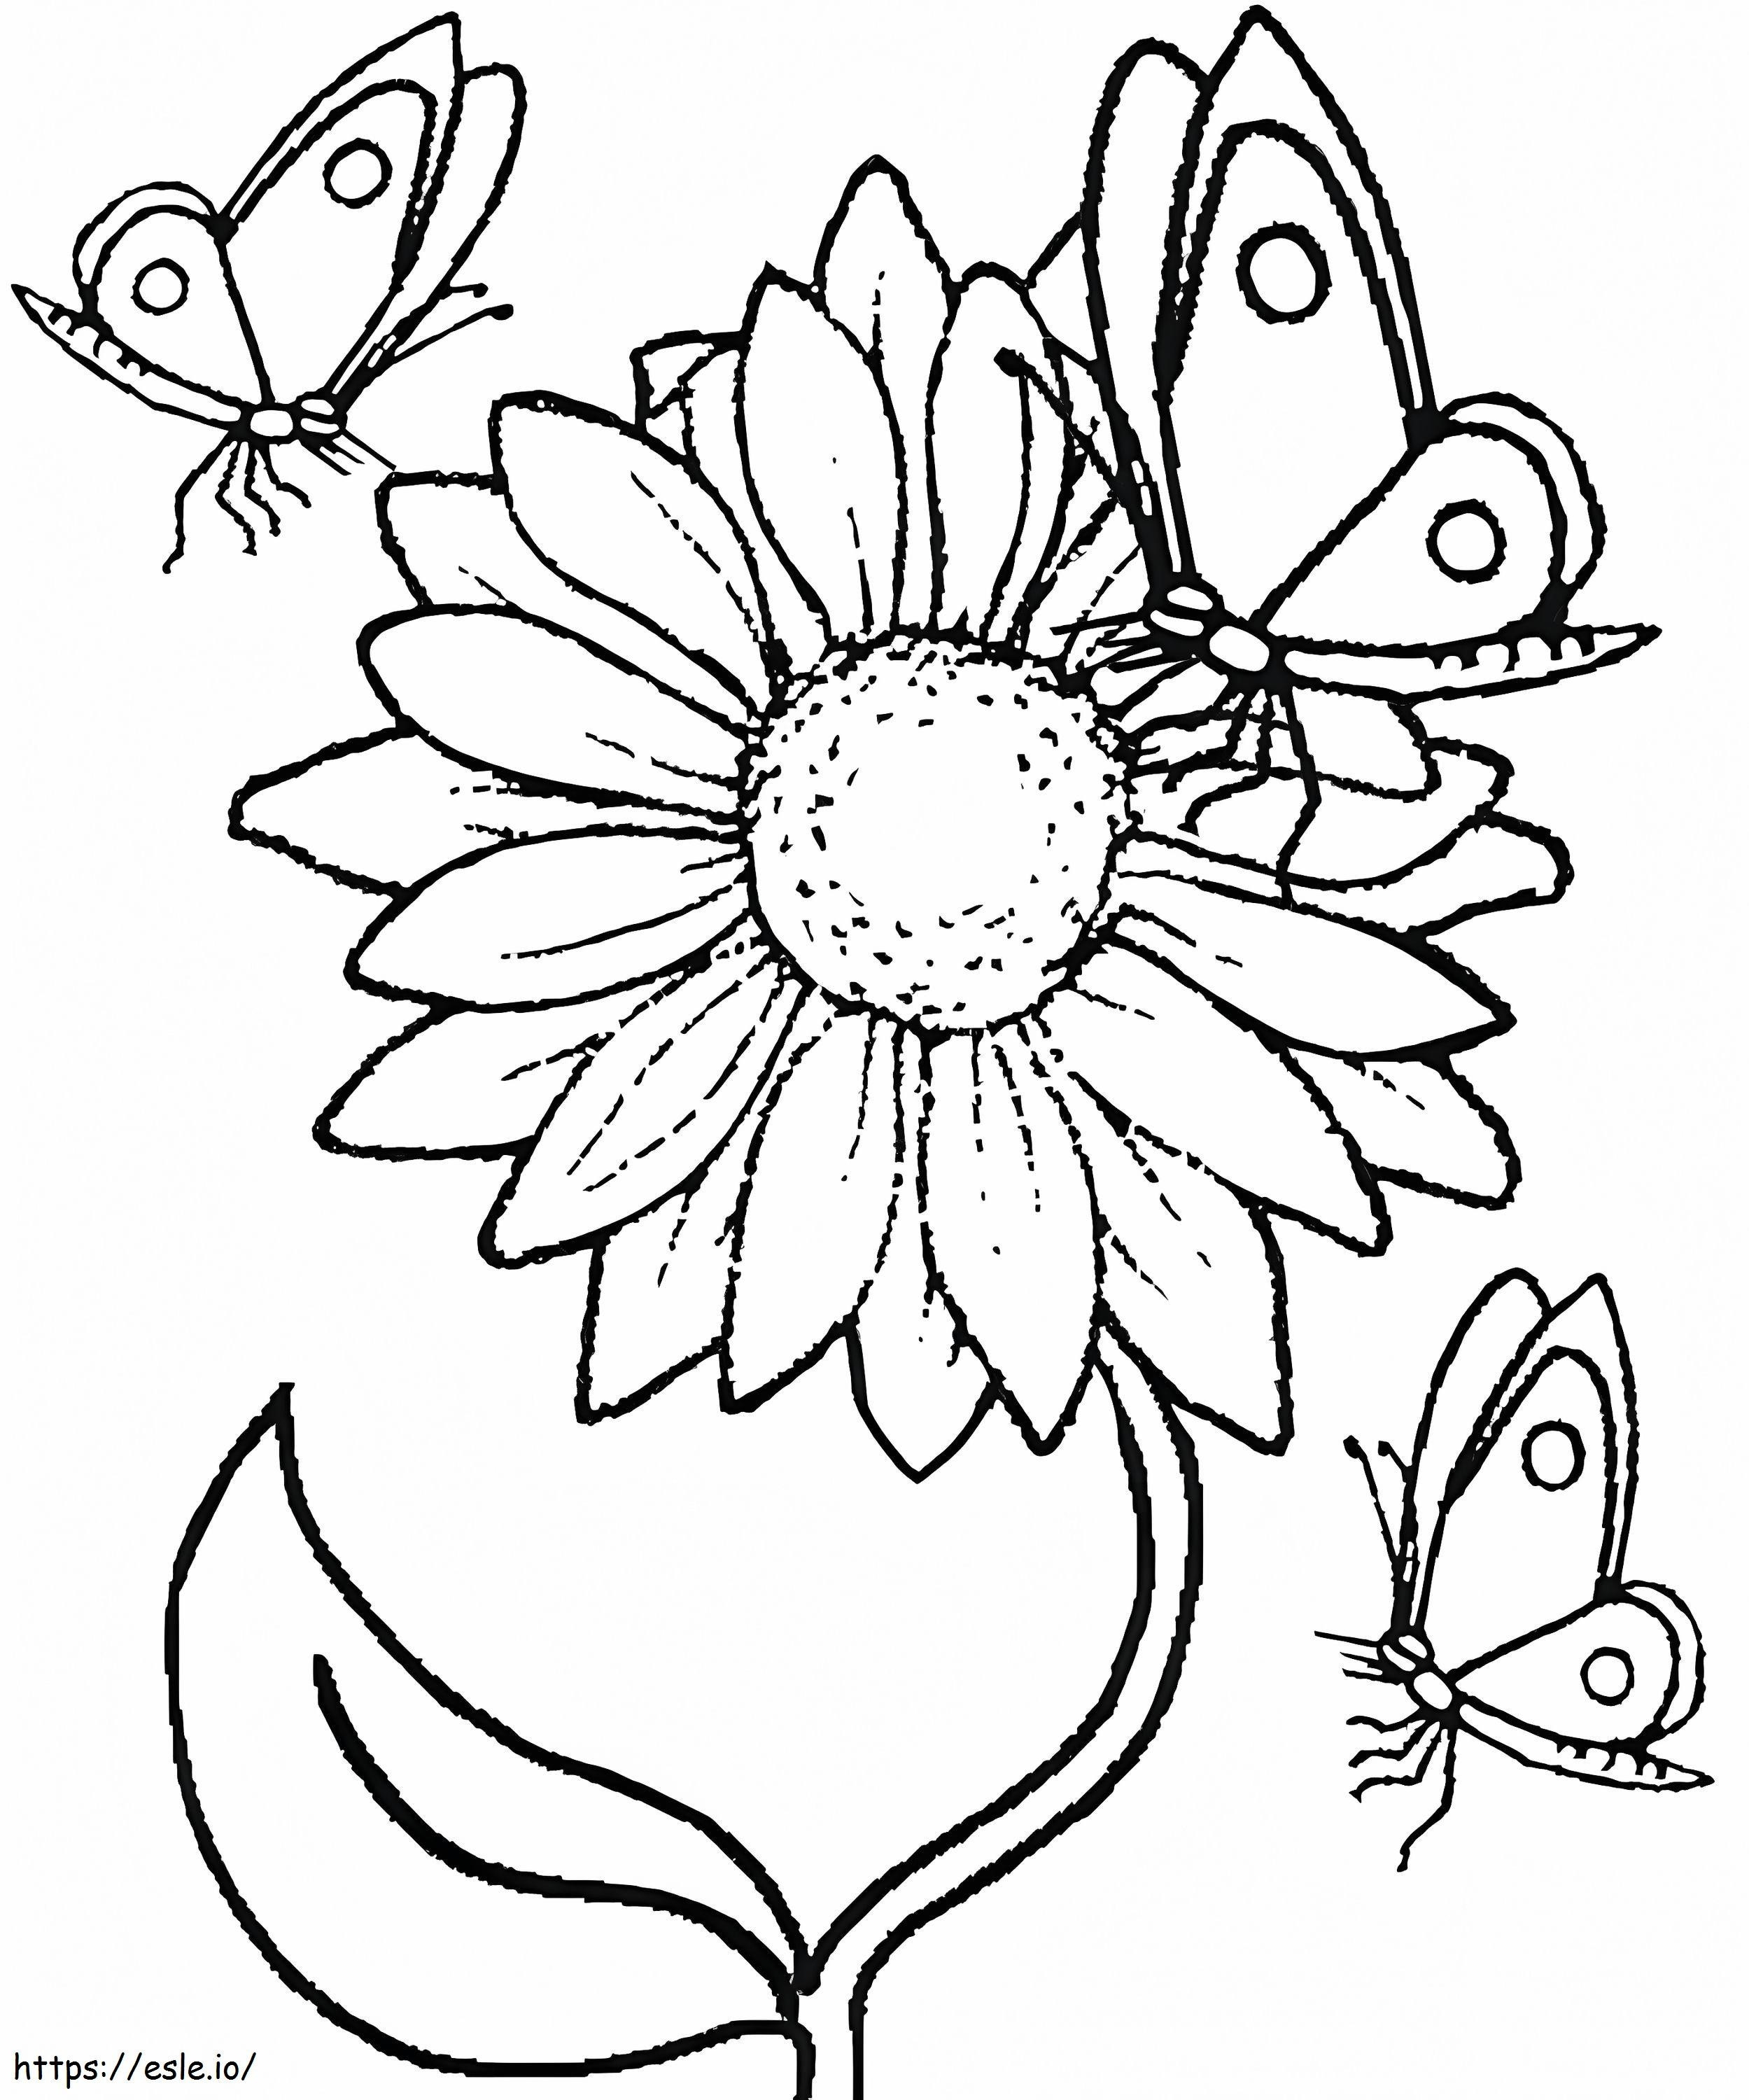 Sonnenblume und Schmetterlinge ausmalbilder